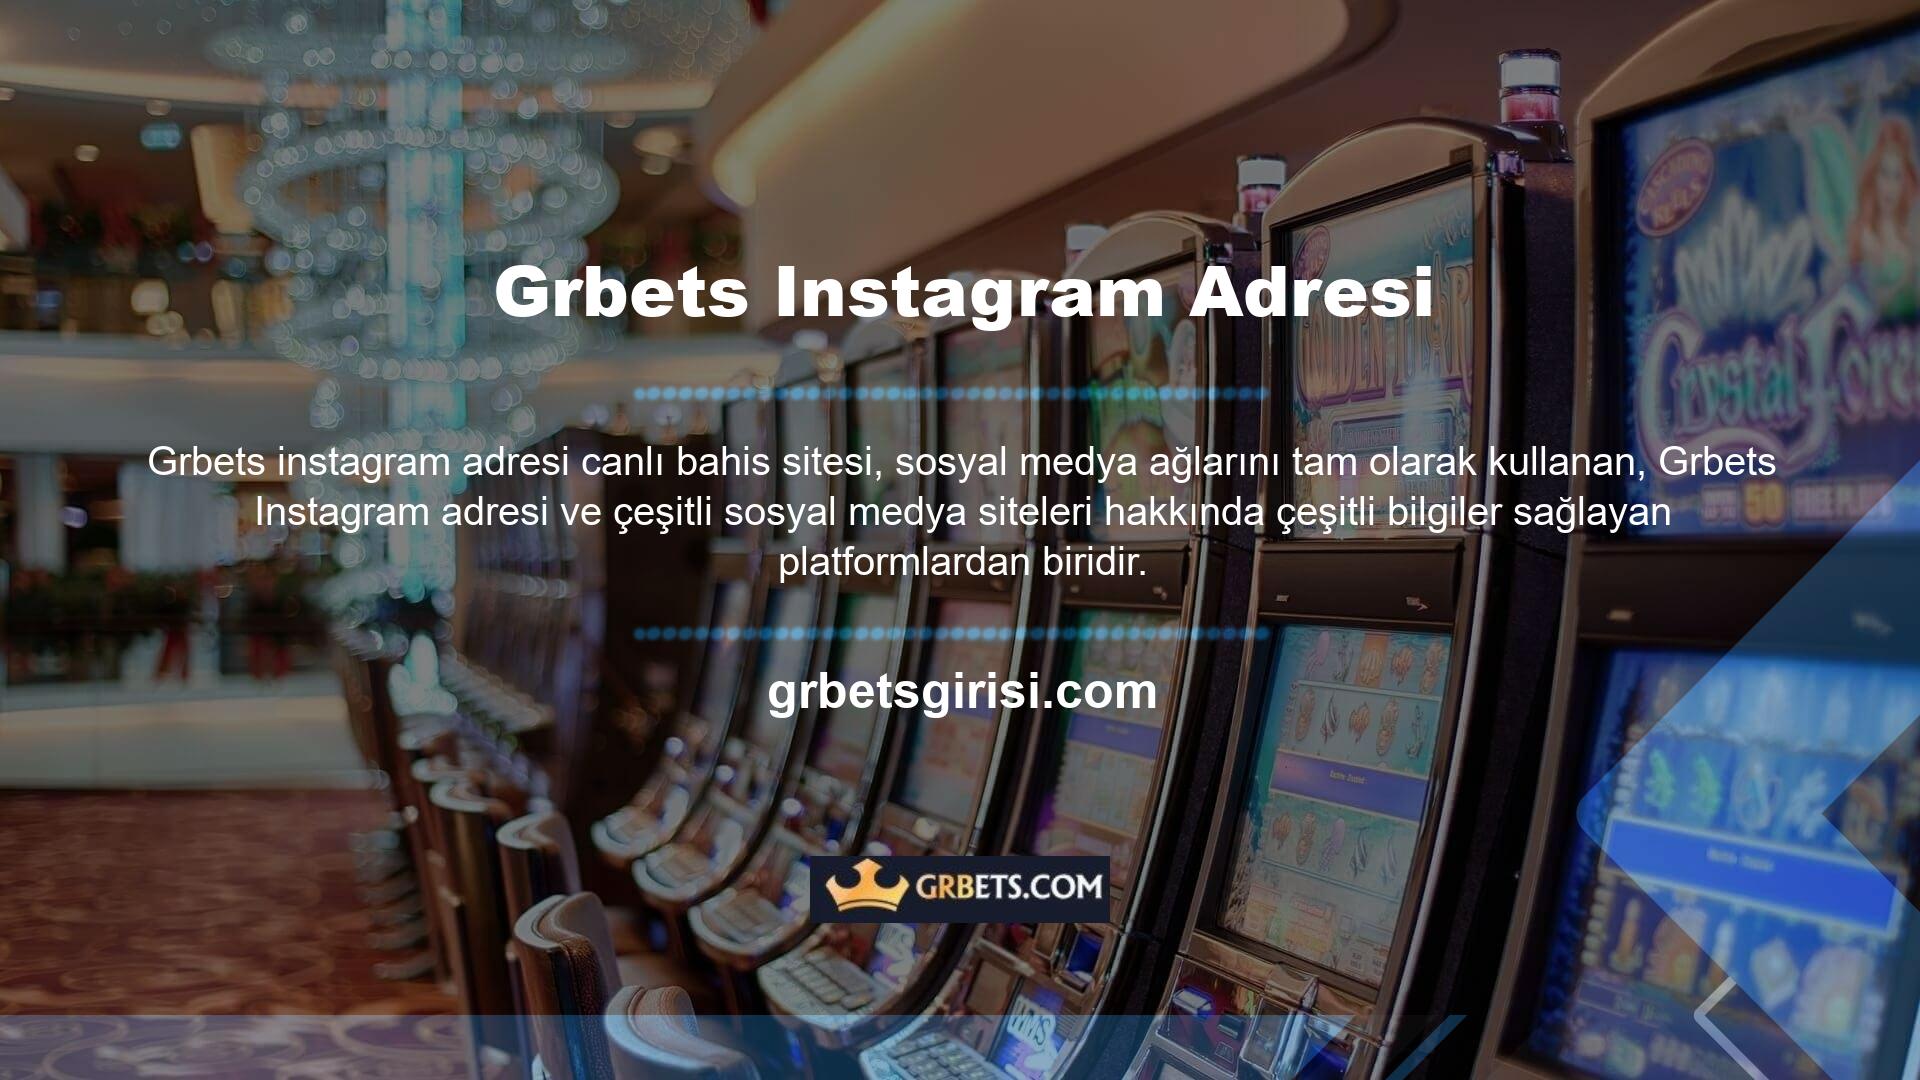 Grbets Instagram hesabı en kolay sosyal medya kanalıdır